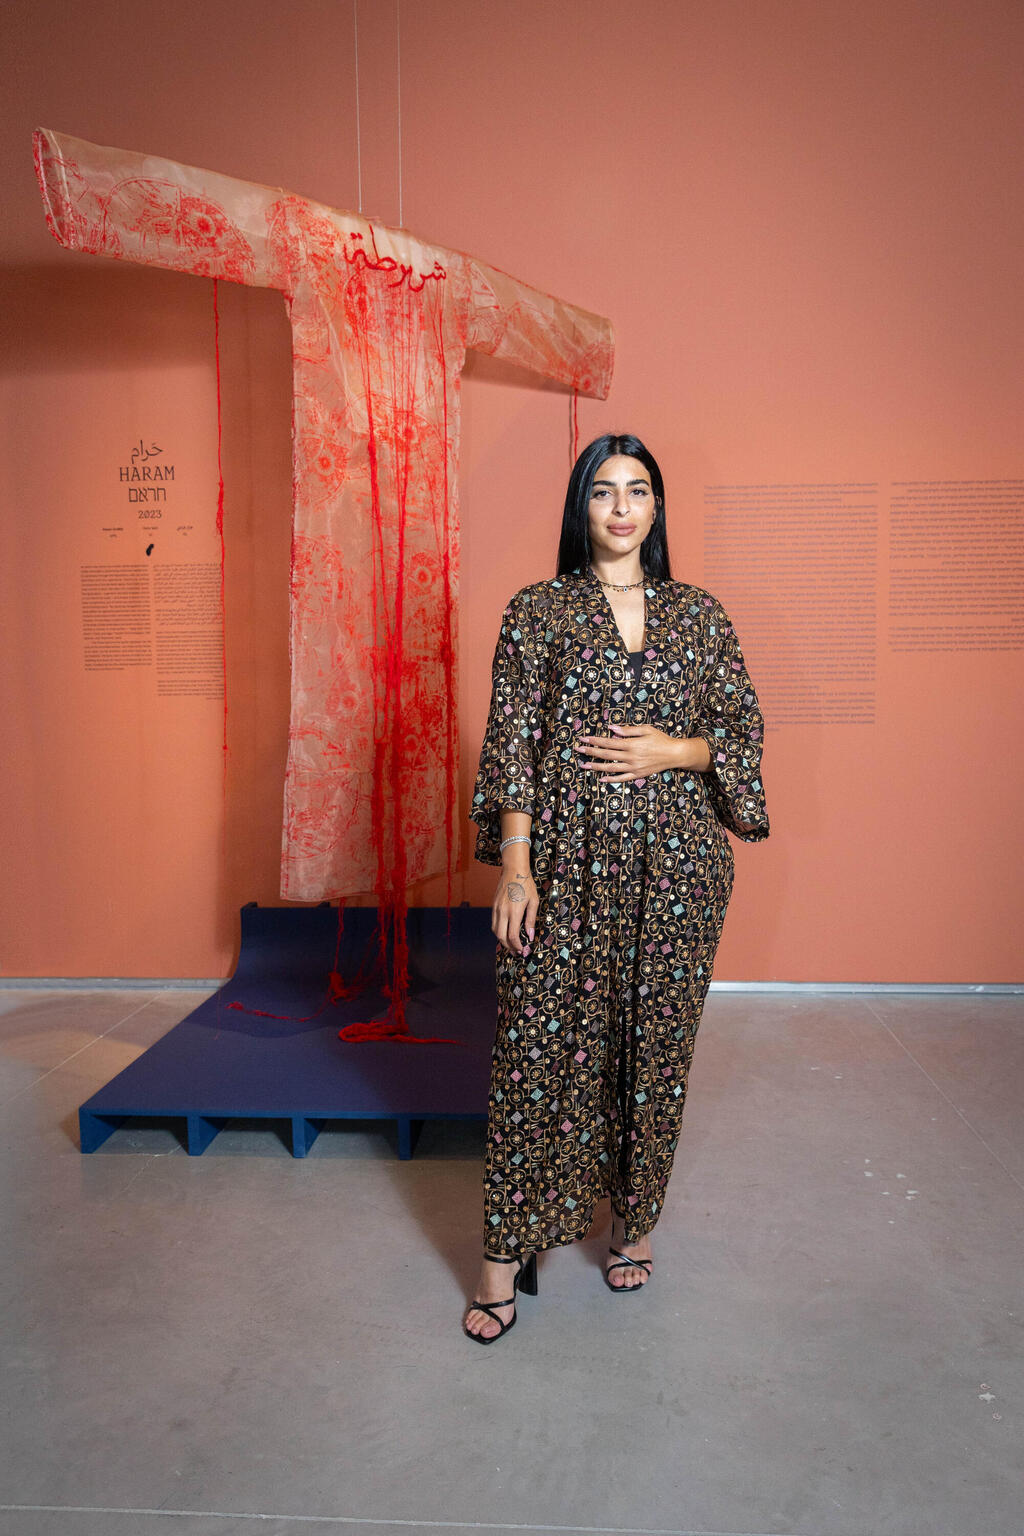 הזאר גרבלי בתערוכה "מעצבים בערבית" במוזיאון ישראל, ירושלים